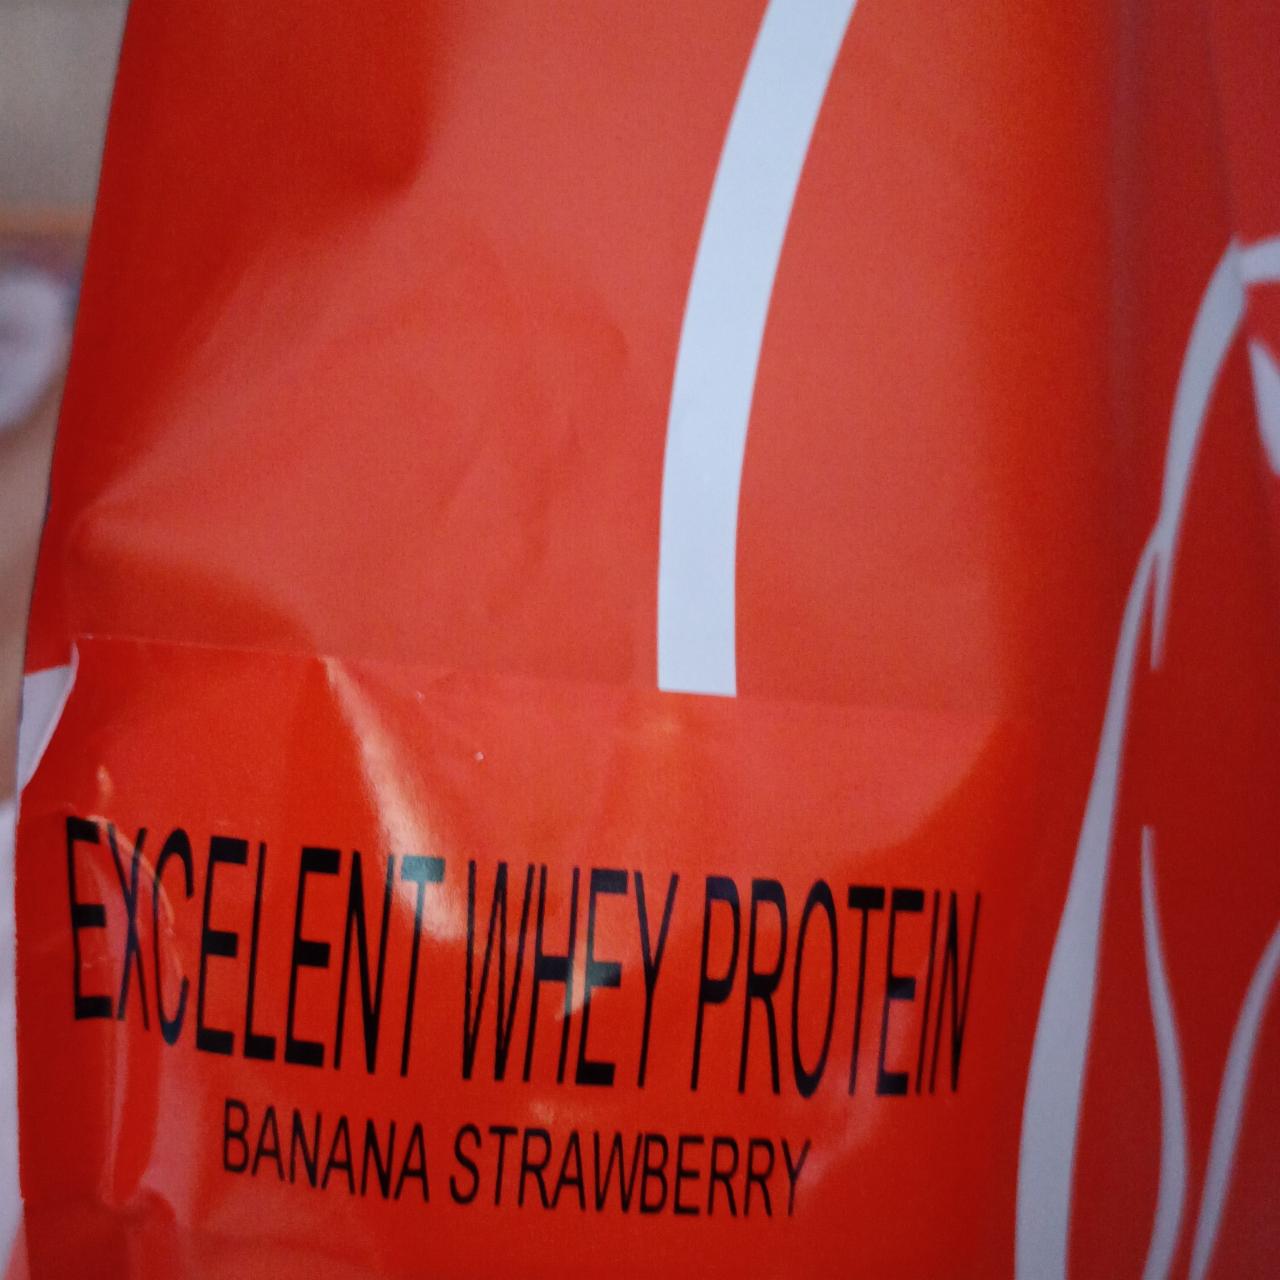 Fotografie - Excelent Whey protein Banana strawberry StillMass